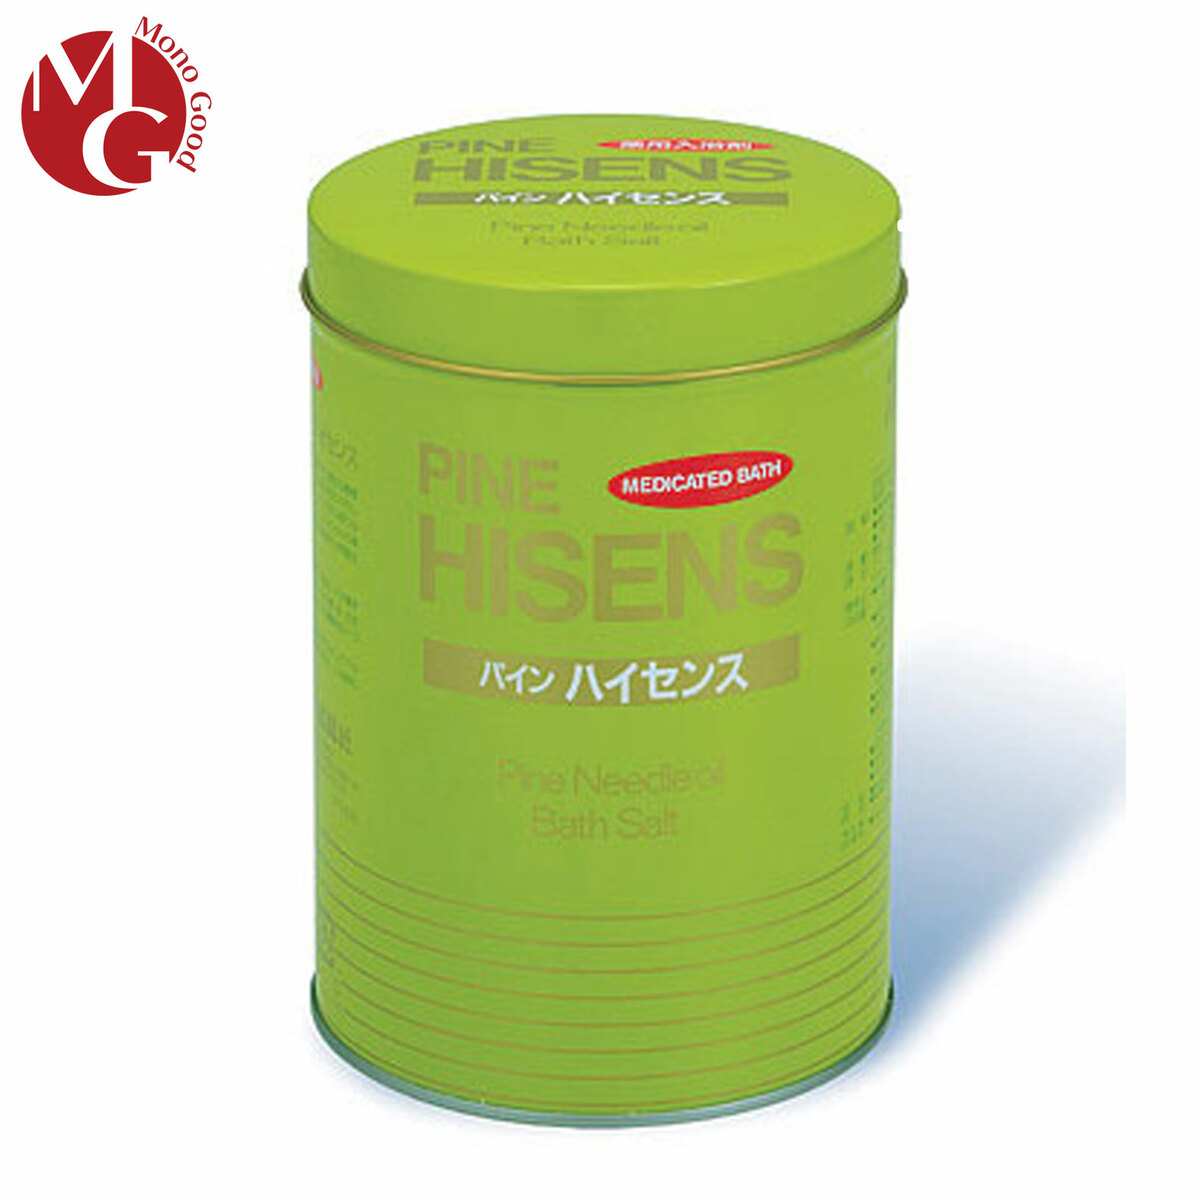 【楽天市場】高陽社 薬用入浴剤 パインハイセンス 2.1kg 3缶セット 